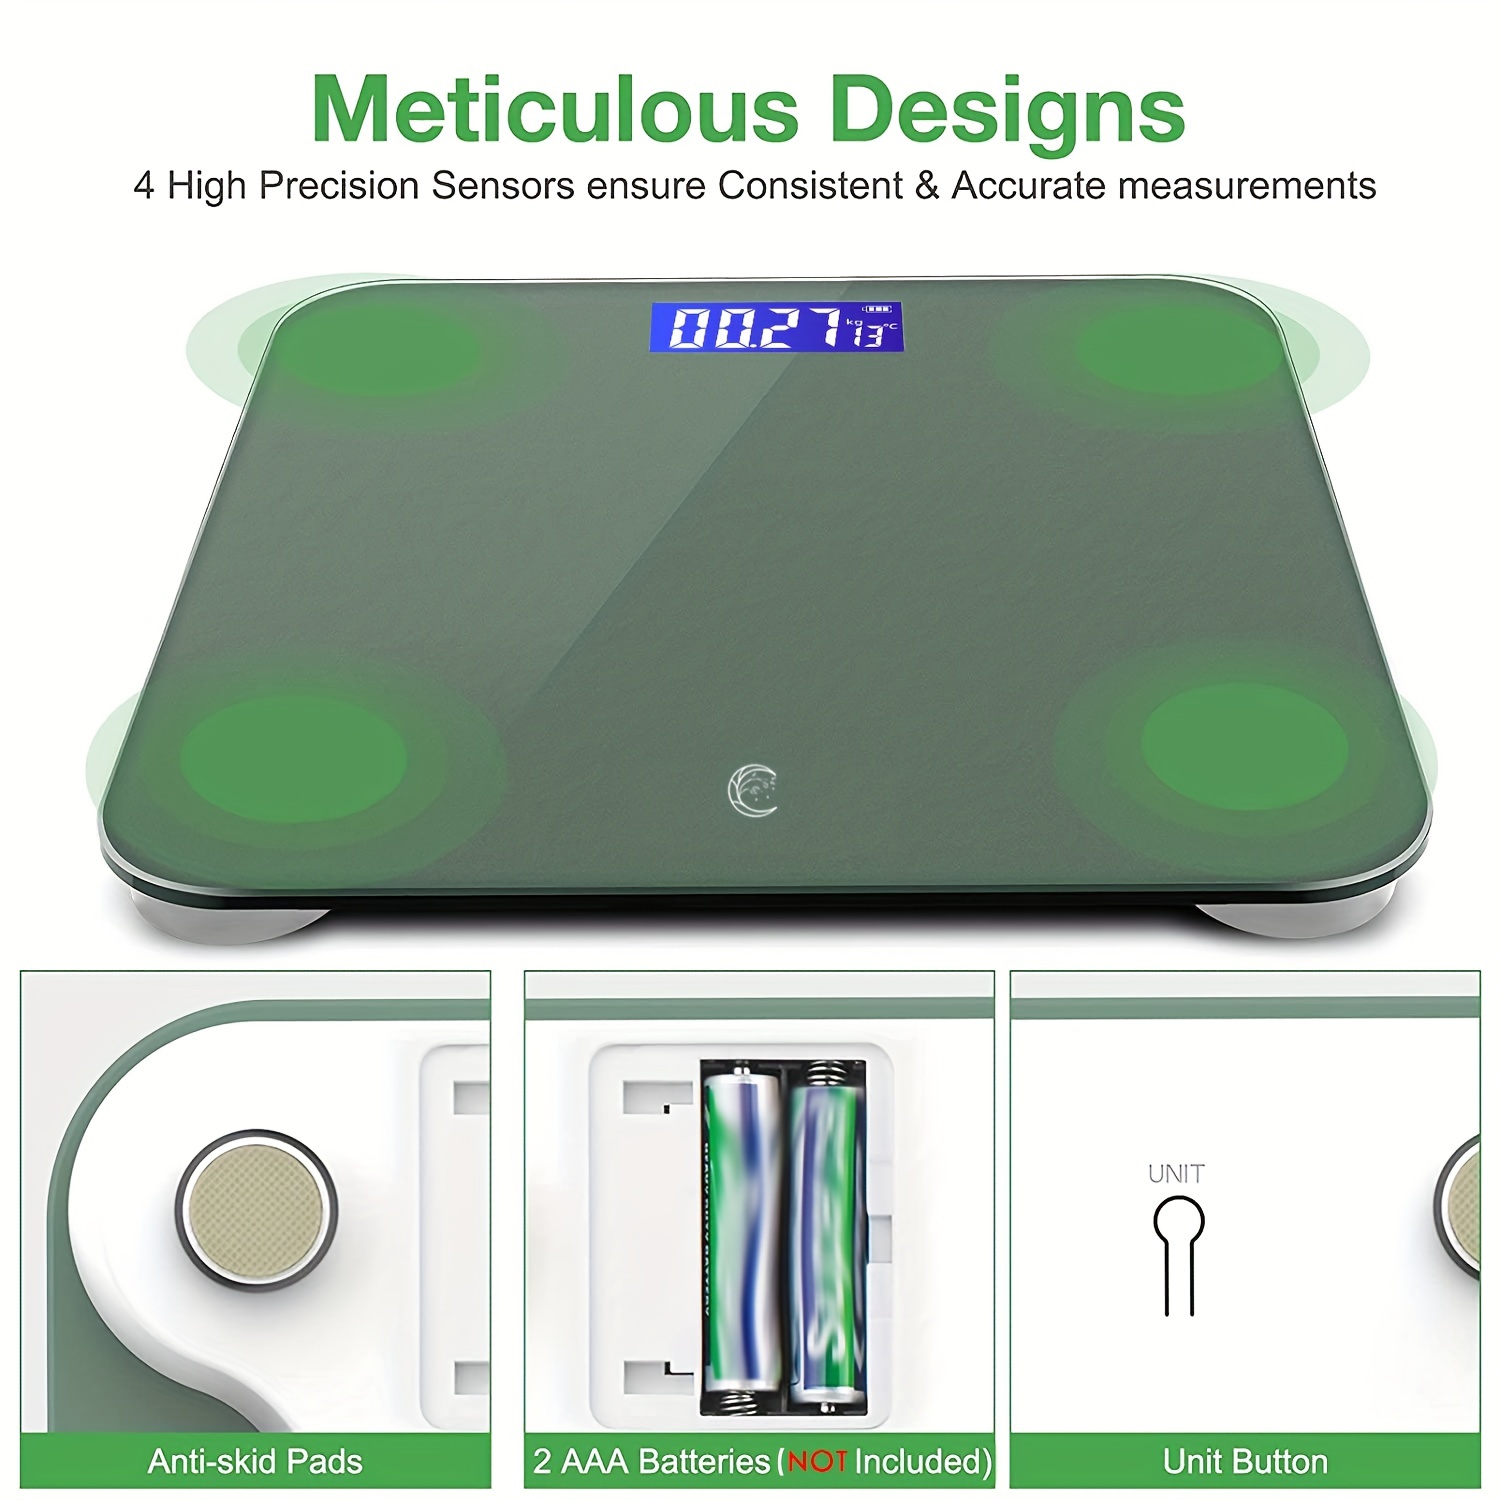 Báscula digital de peso corporal con pedal de vidrio templado para baño